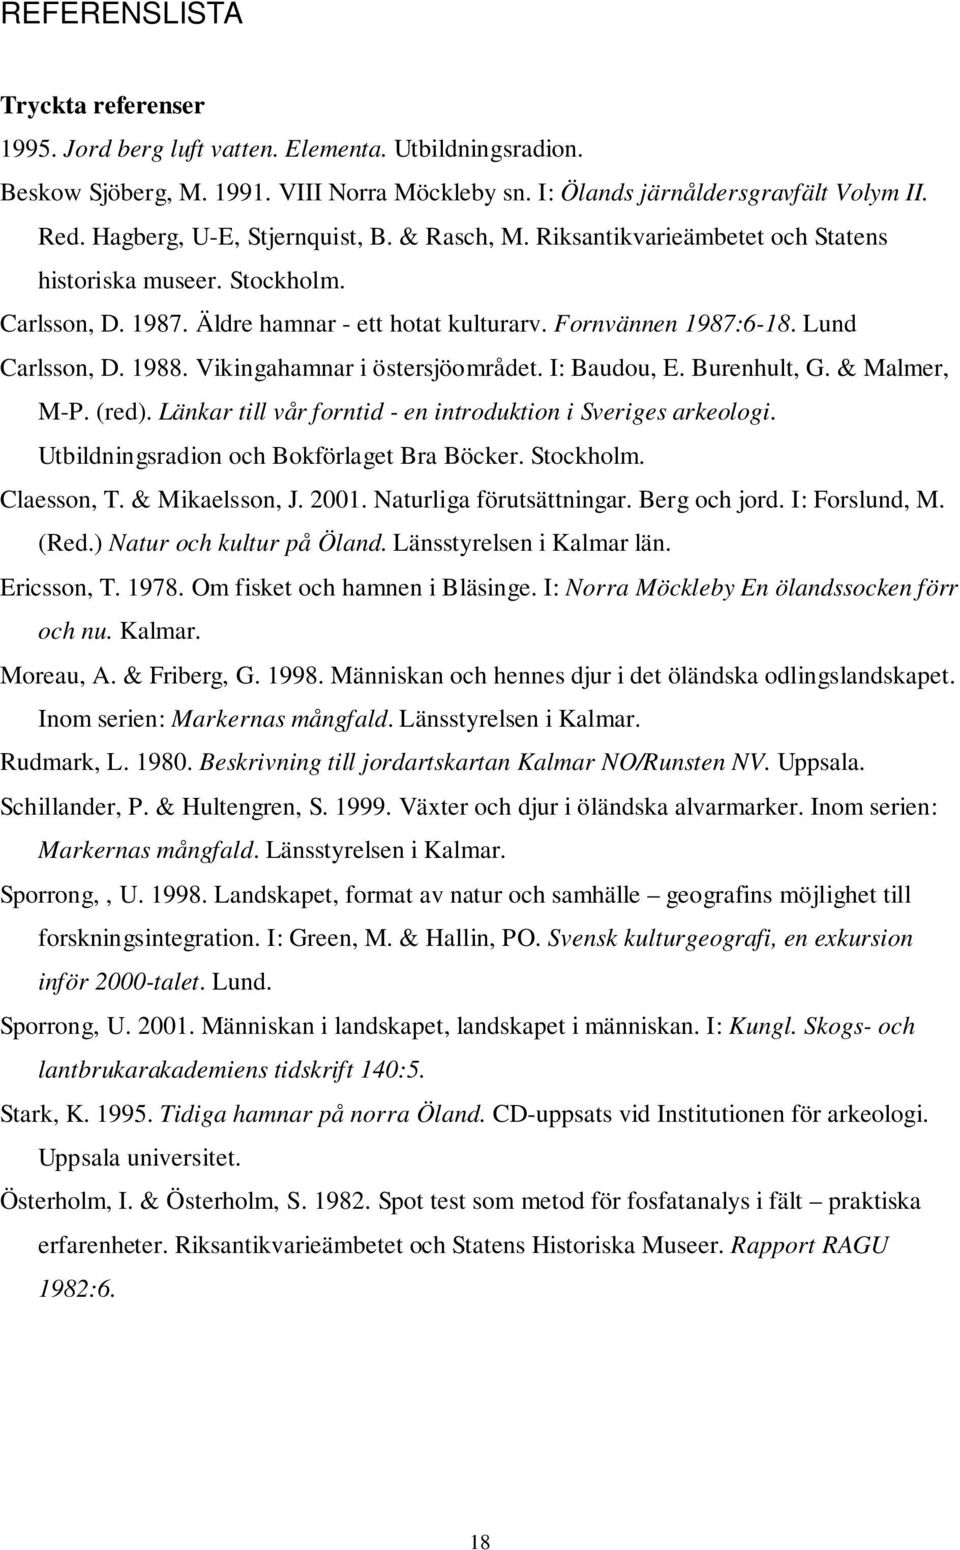 1988. Vikingahamnar i östersjöområdet. I: Baudou, E. Burenhult, G. & Malmer, M-P. (red). Länkar till vår forntid - en introduktion i Sveriges arkeologi. Utbildningsradion och Bokförlaget Bra Böcker.